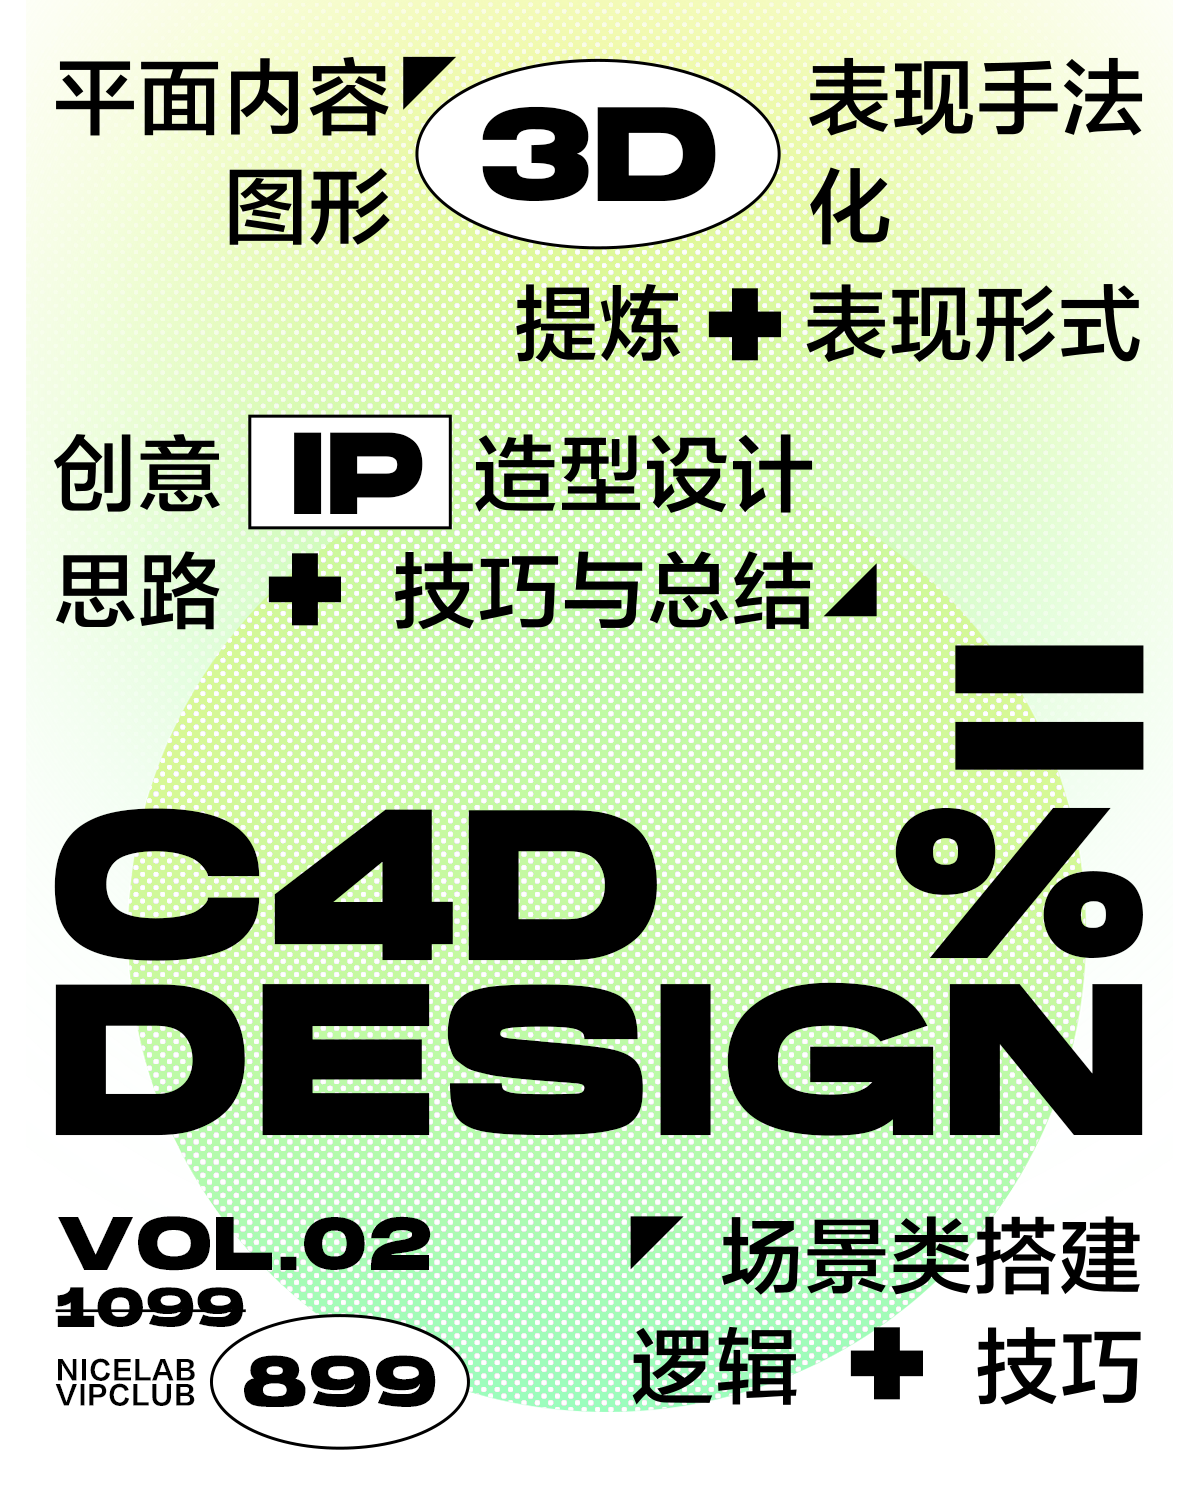 【稀有好课】不错实验室-C4D创意基础设计/C4D教程/C4D课程/C4D基础价值899